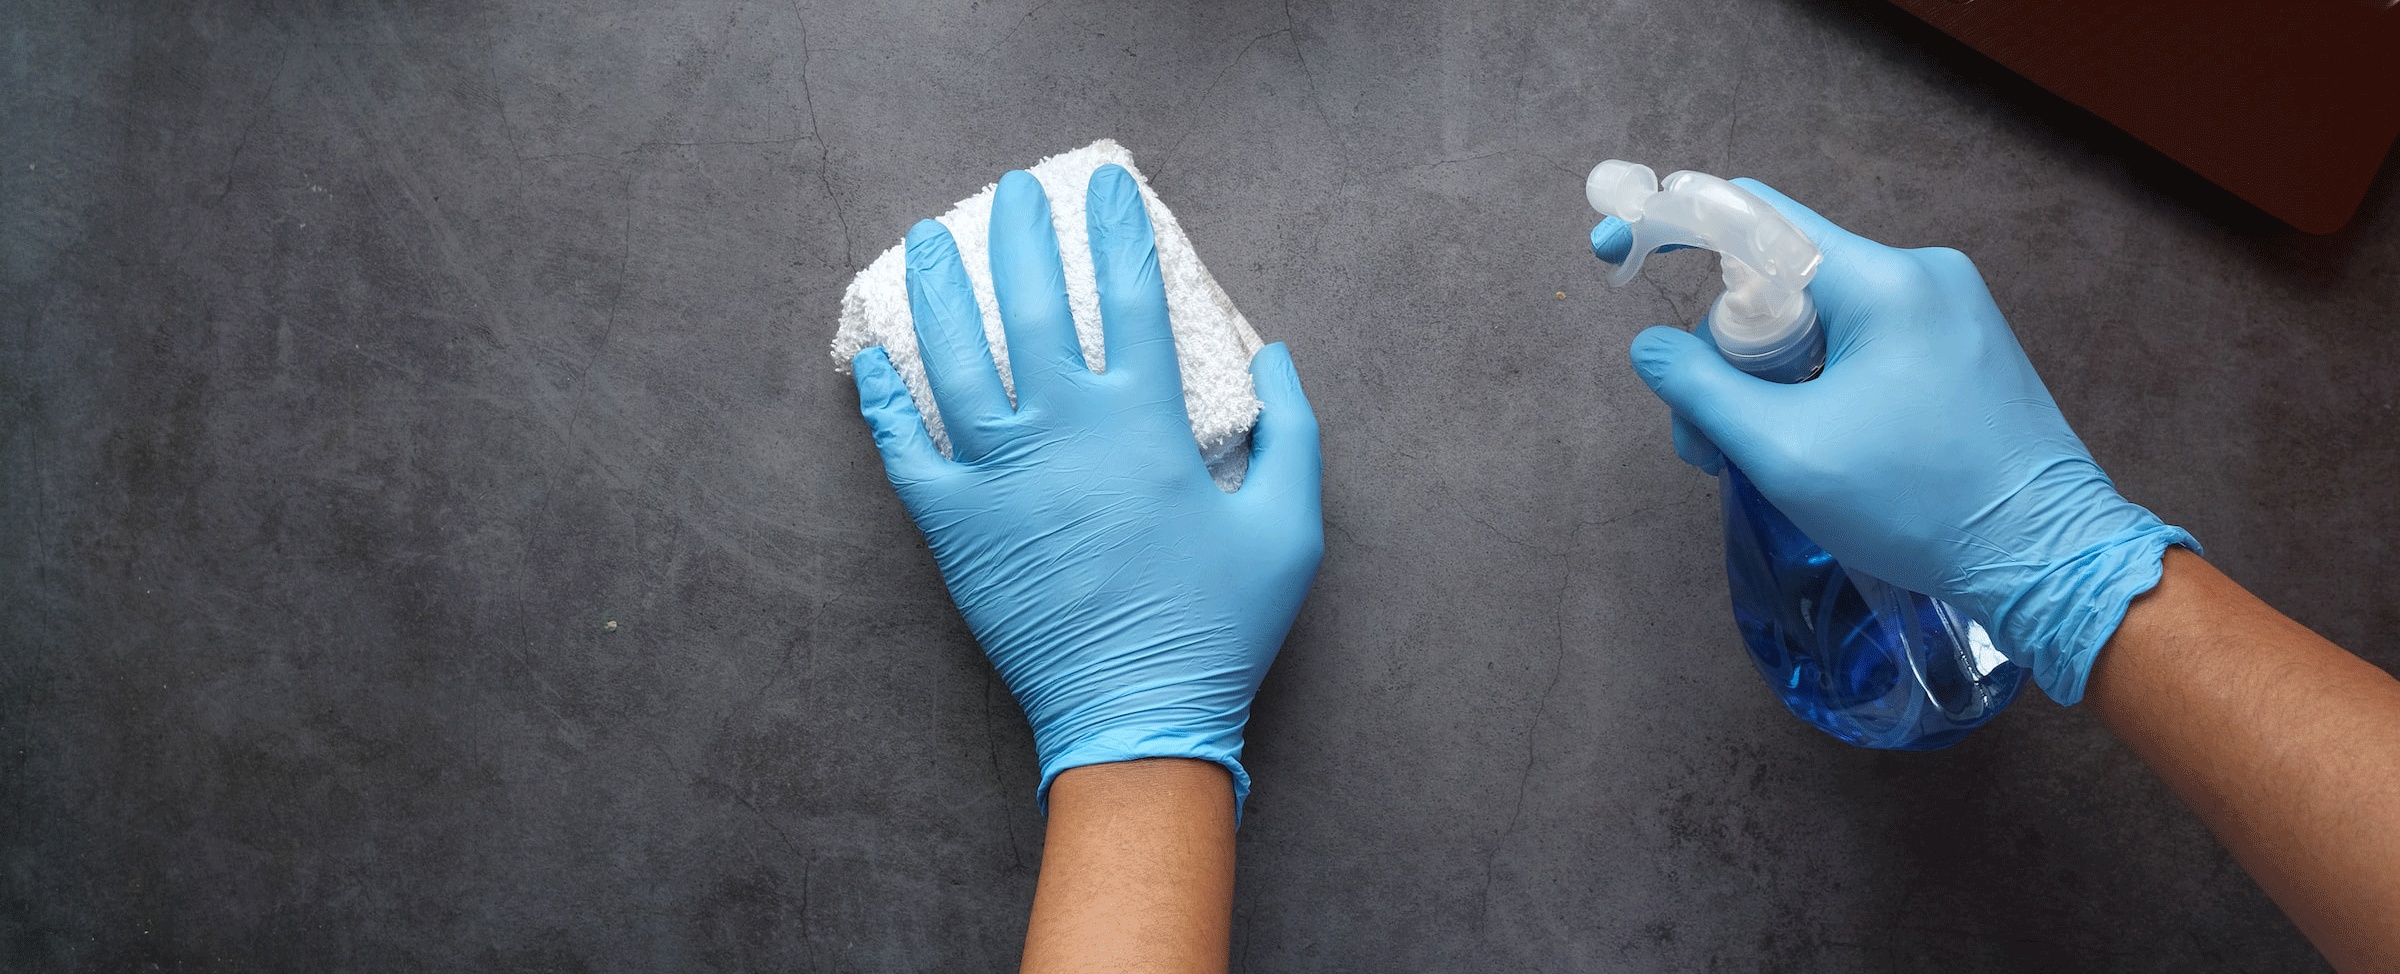 Comment éviter la moisissure dans la salle de bain?